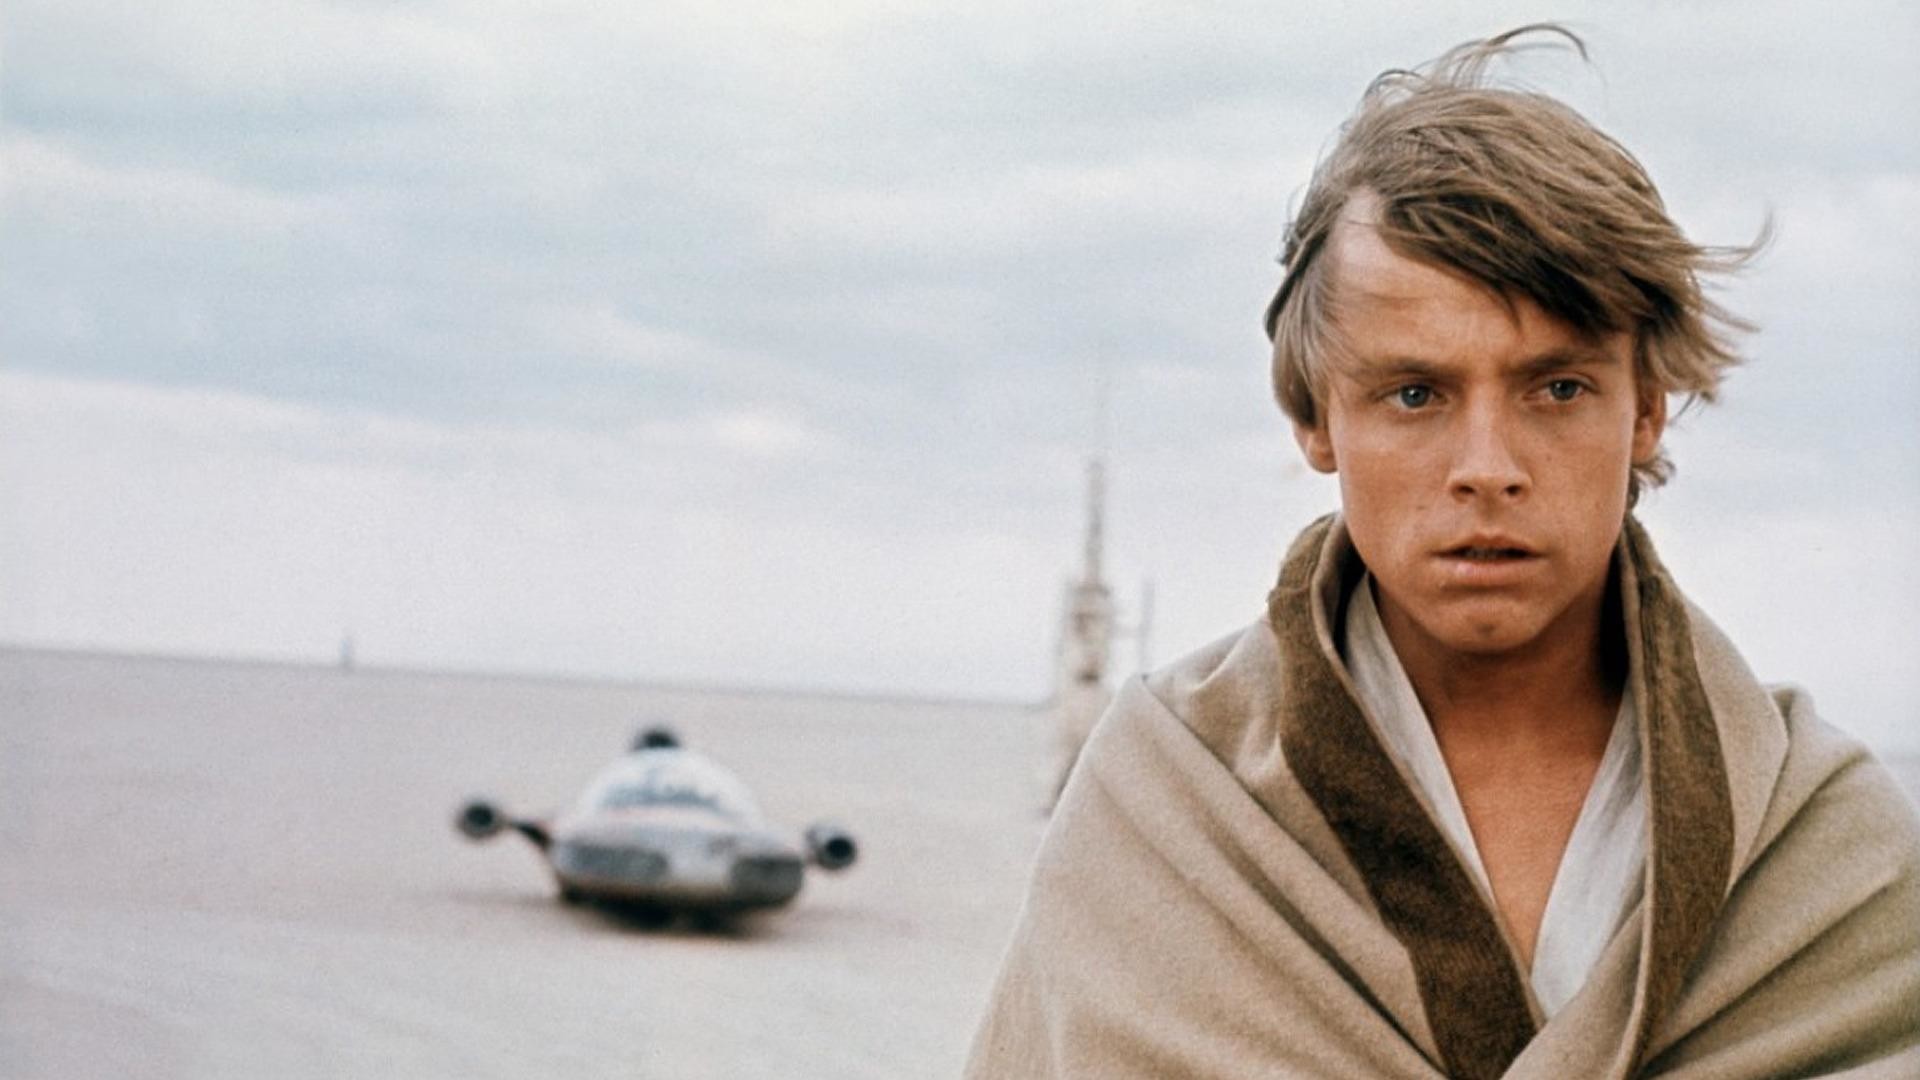 1920x1080 Star Wars – Luke Skywalker on Tatooine HD Wallpaper. Â« Â»